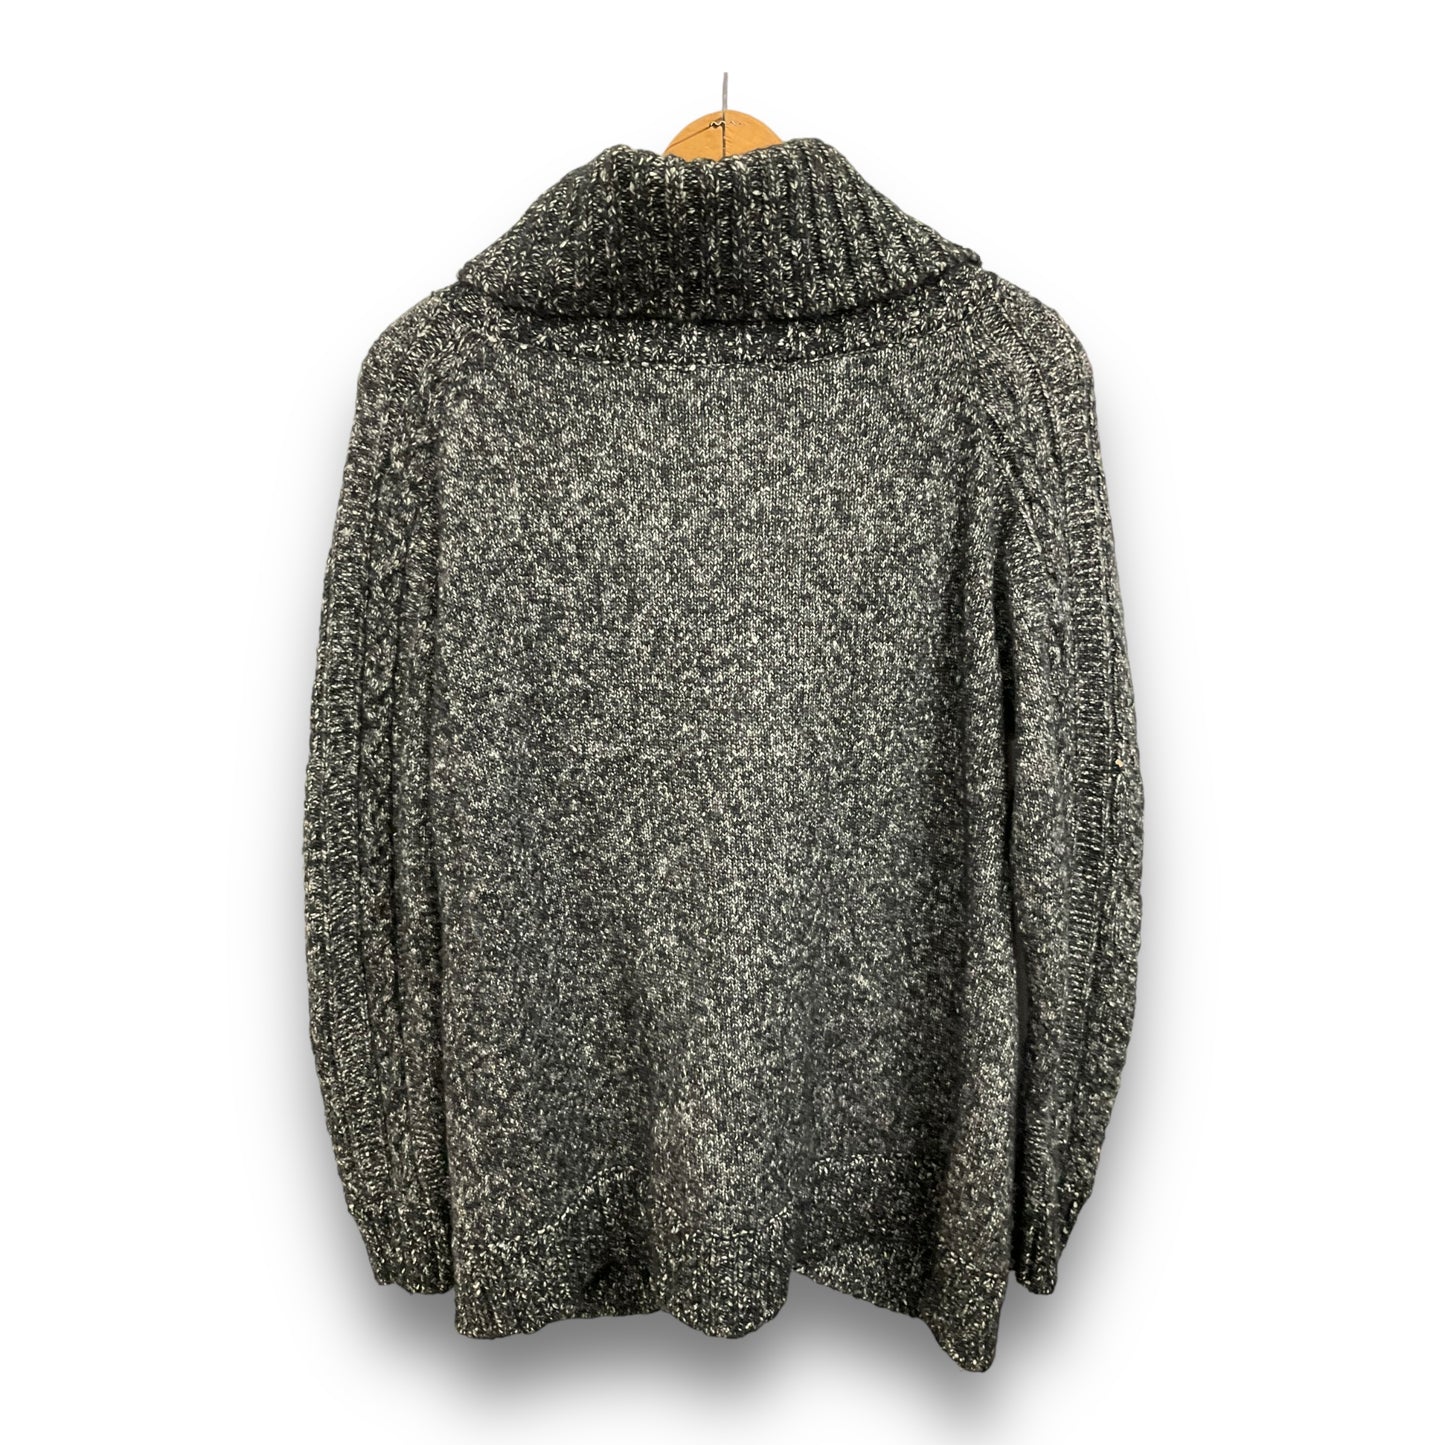 Sweater By Inc  Size: Xxl